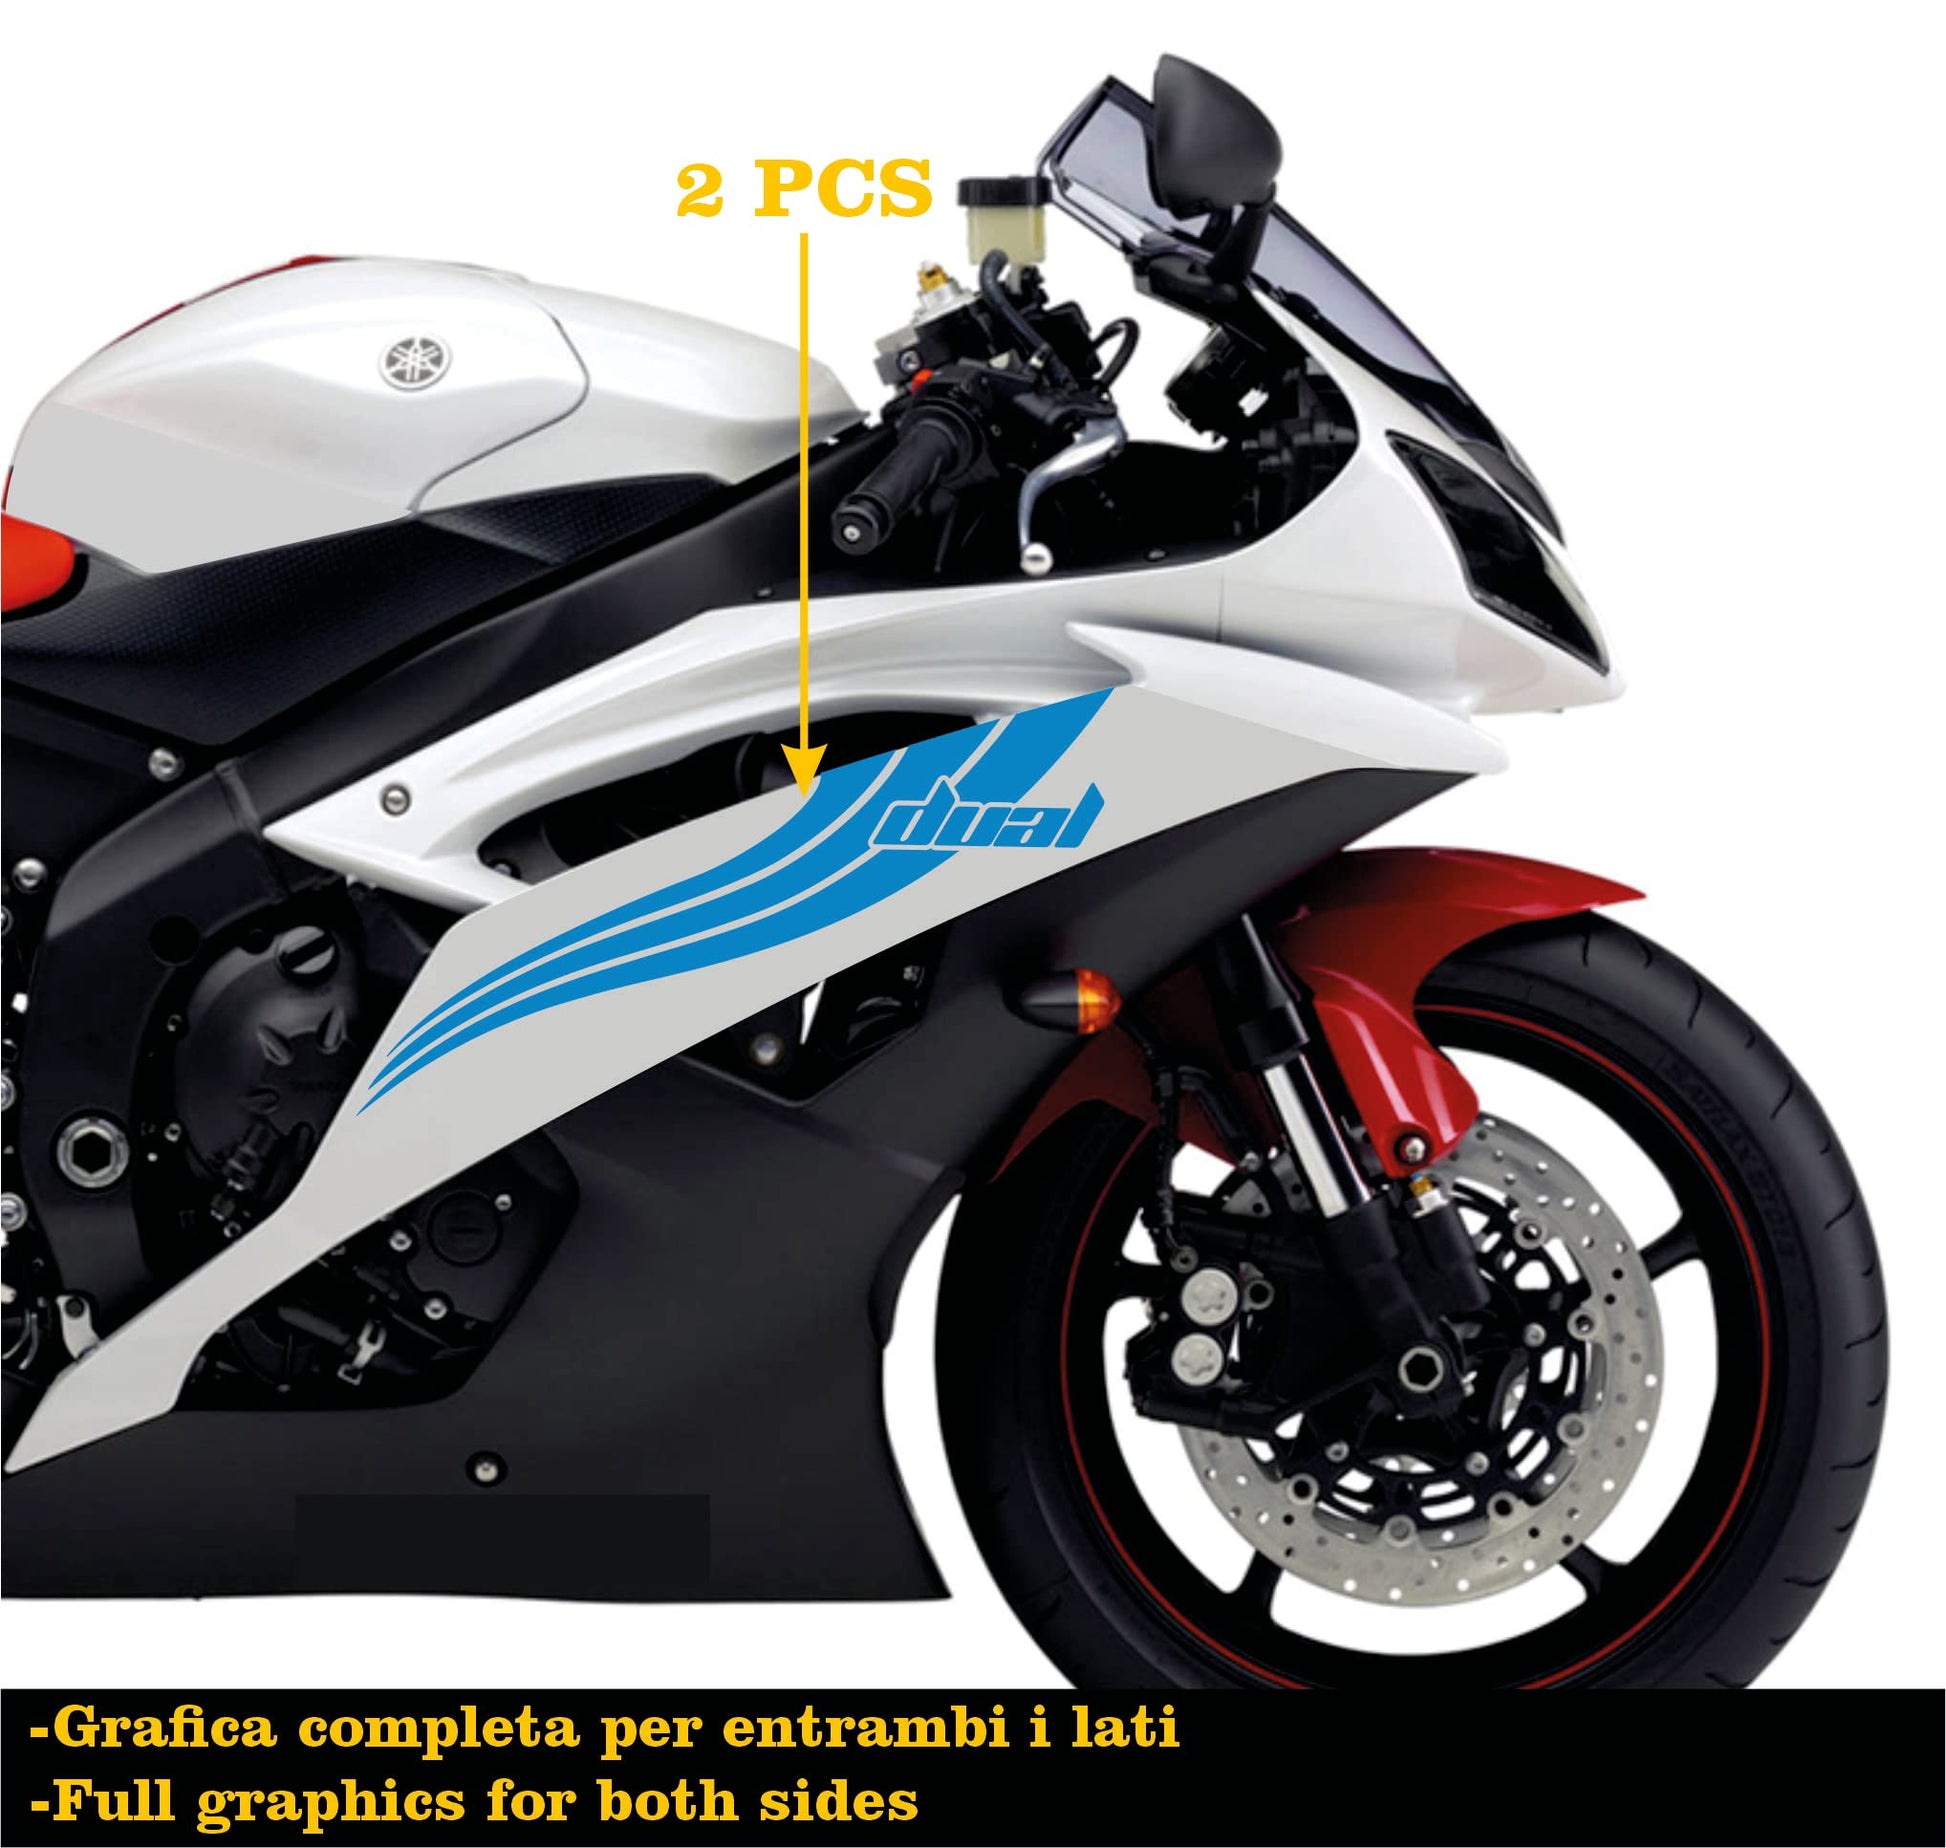 DualColorStampe Adesivi Compatibili con Yamaha R6 ANNO 2008 carena moto accessori stickers Motociclo colore a scelta DUAL COD.M0281 a €25.99 solo da DualColorStampe